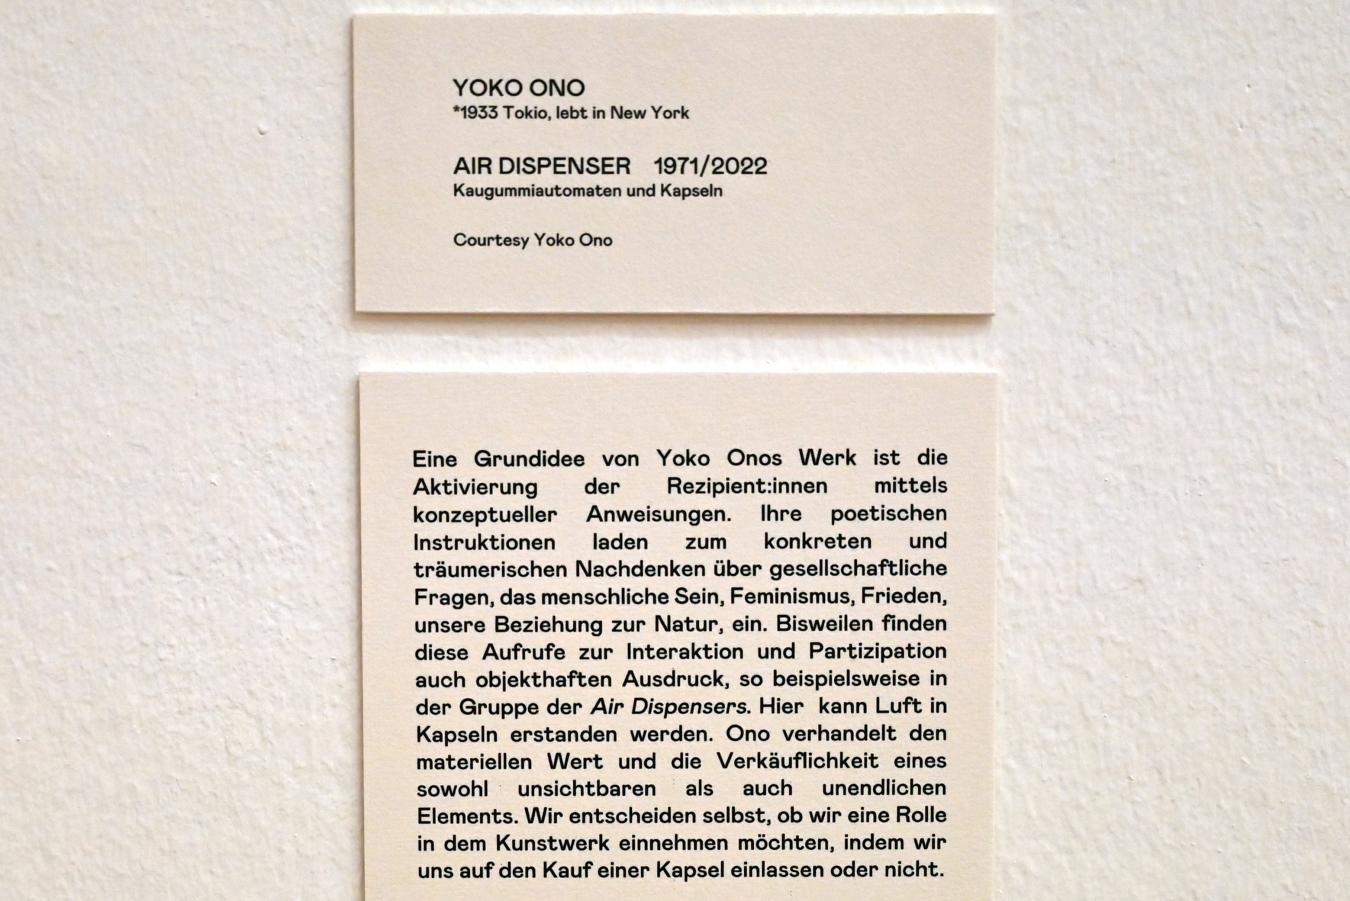 Yoko Ono (1971), Air Dispenser - Luftspender, Bonn, Kunstmuseum, Ausstellung "Welt in der Schwebe" vom 24.02. - 19.06.2022, Saal 4, 1971, Bild 2/3